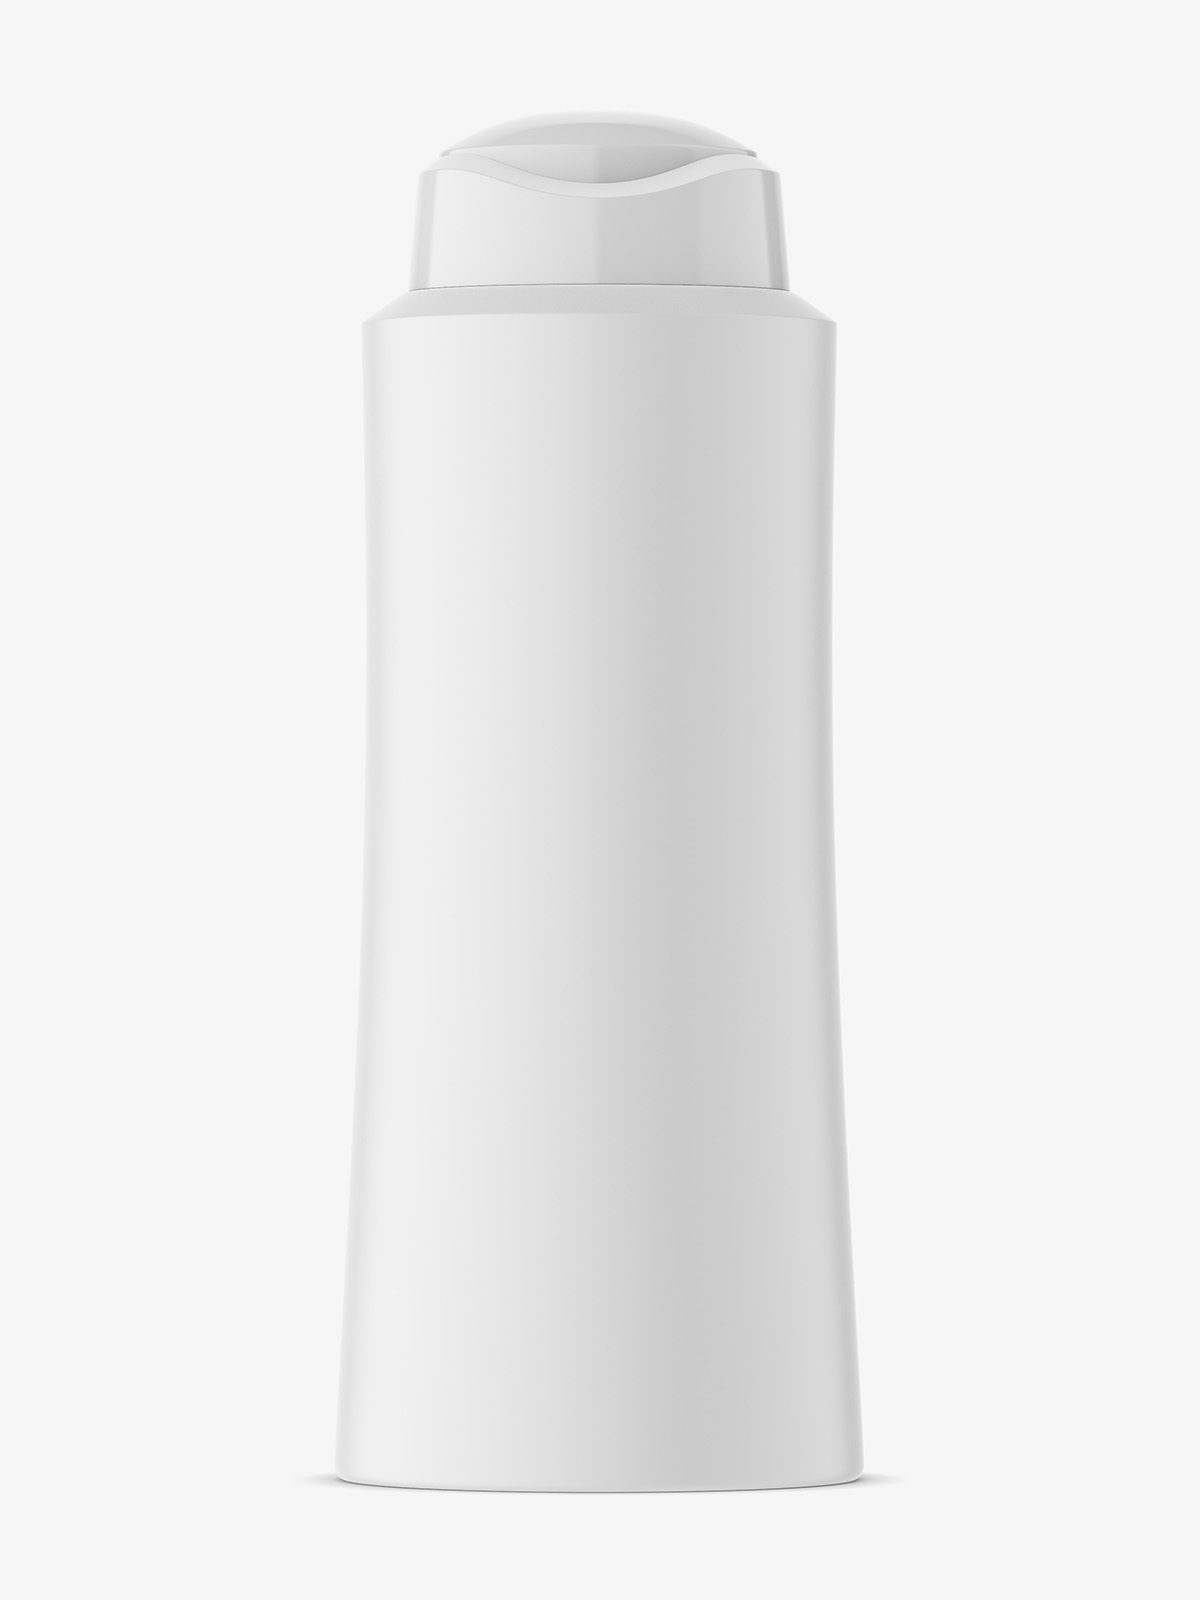 Amber essential oil bottle mockup - Smarty Mockups